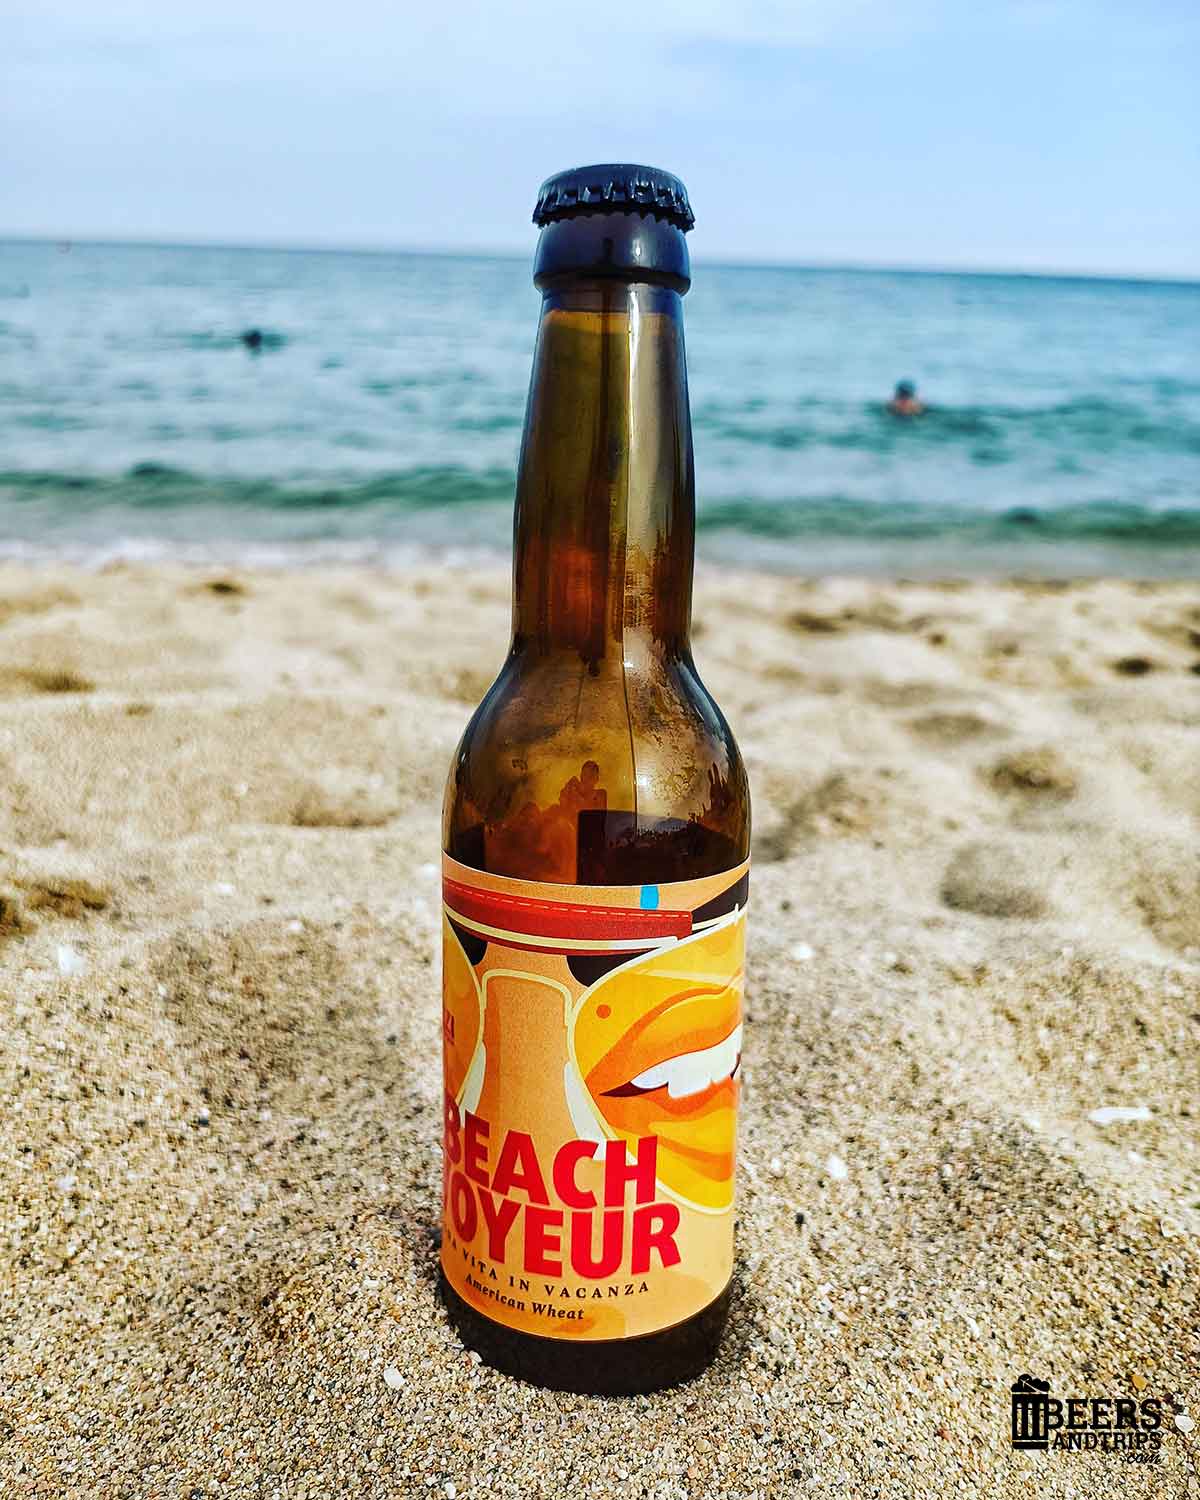 Cerveza Beach Voyeur de Birra Bellazzi